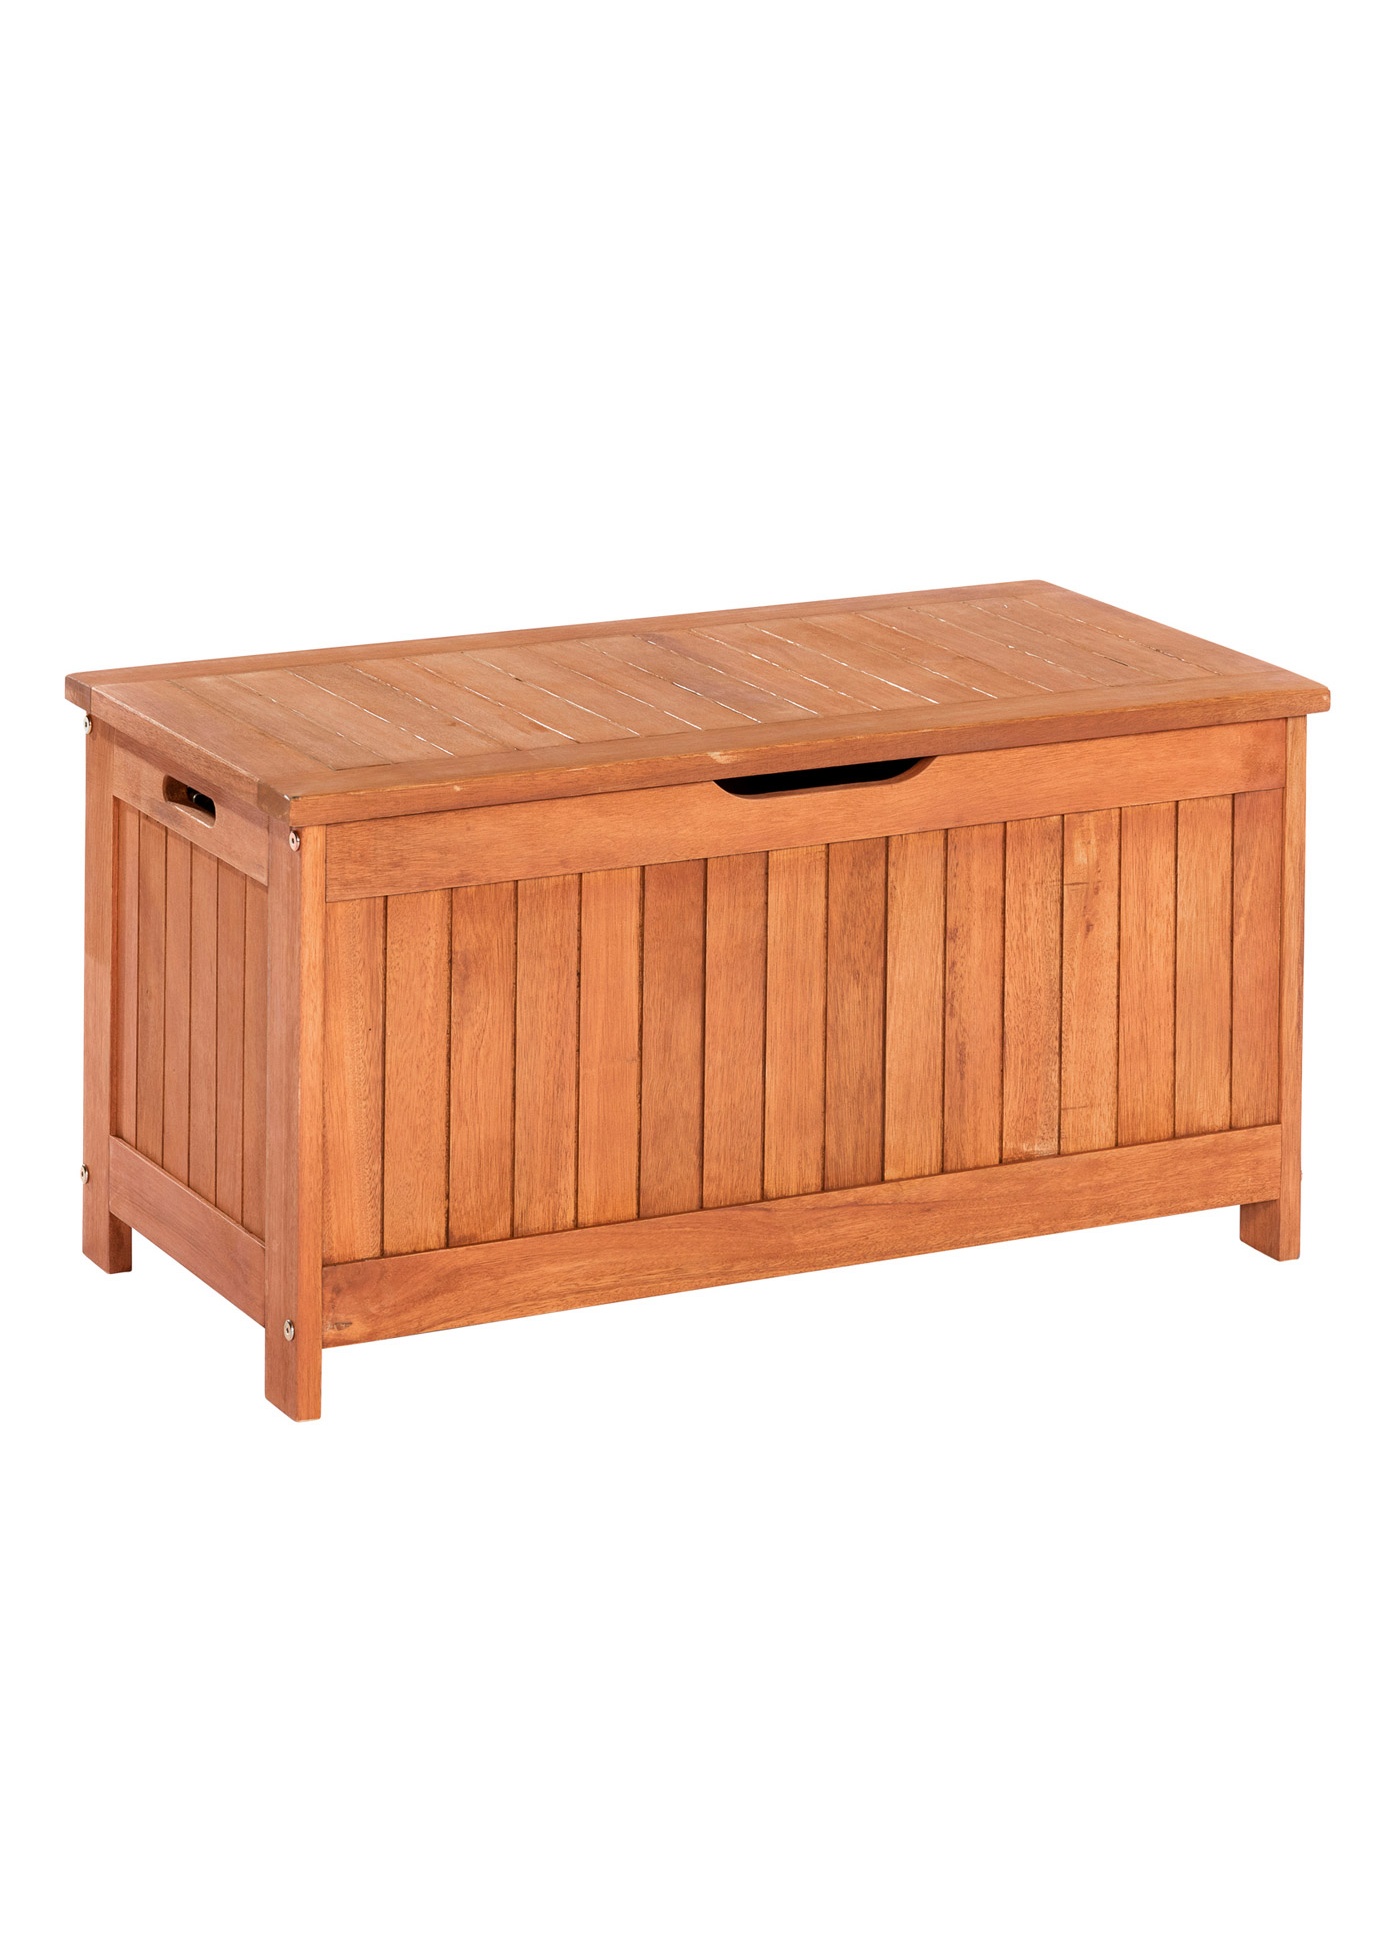 Holz Auflagenbox